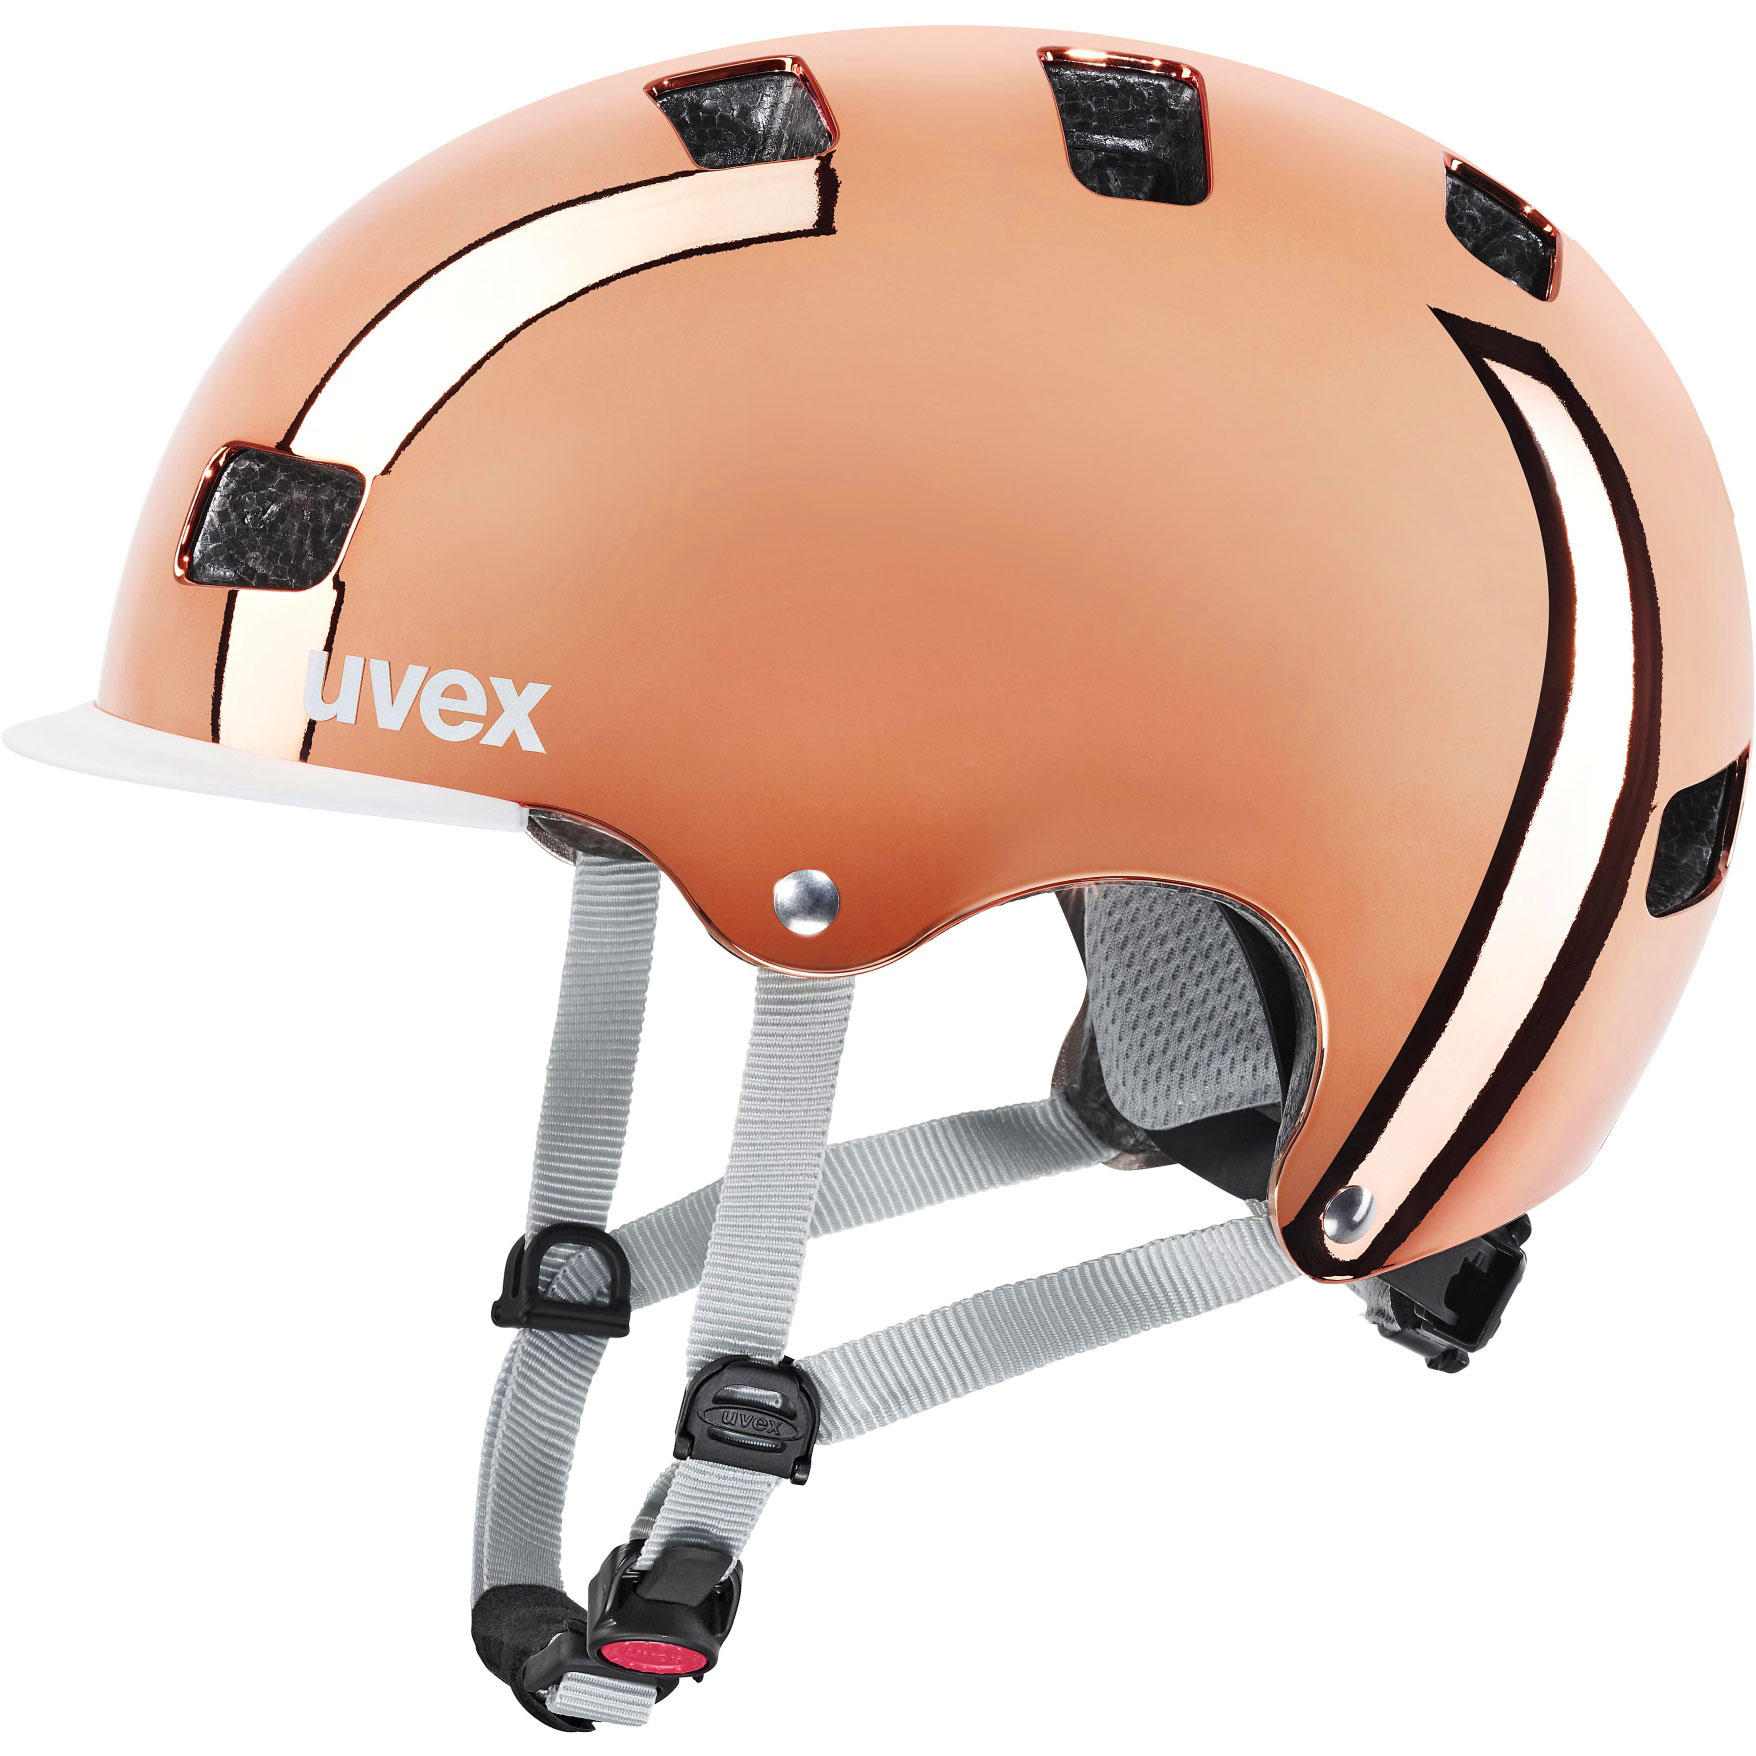 Productfoto van Uvex hlmt 5 bike pro Helm - rosé chrome